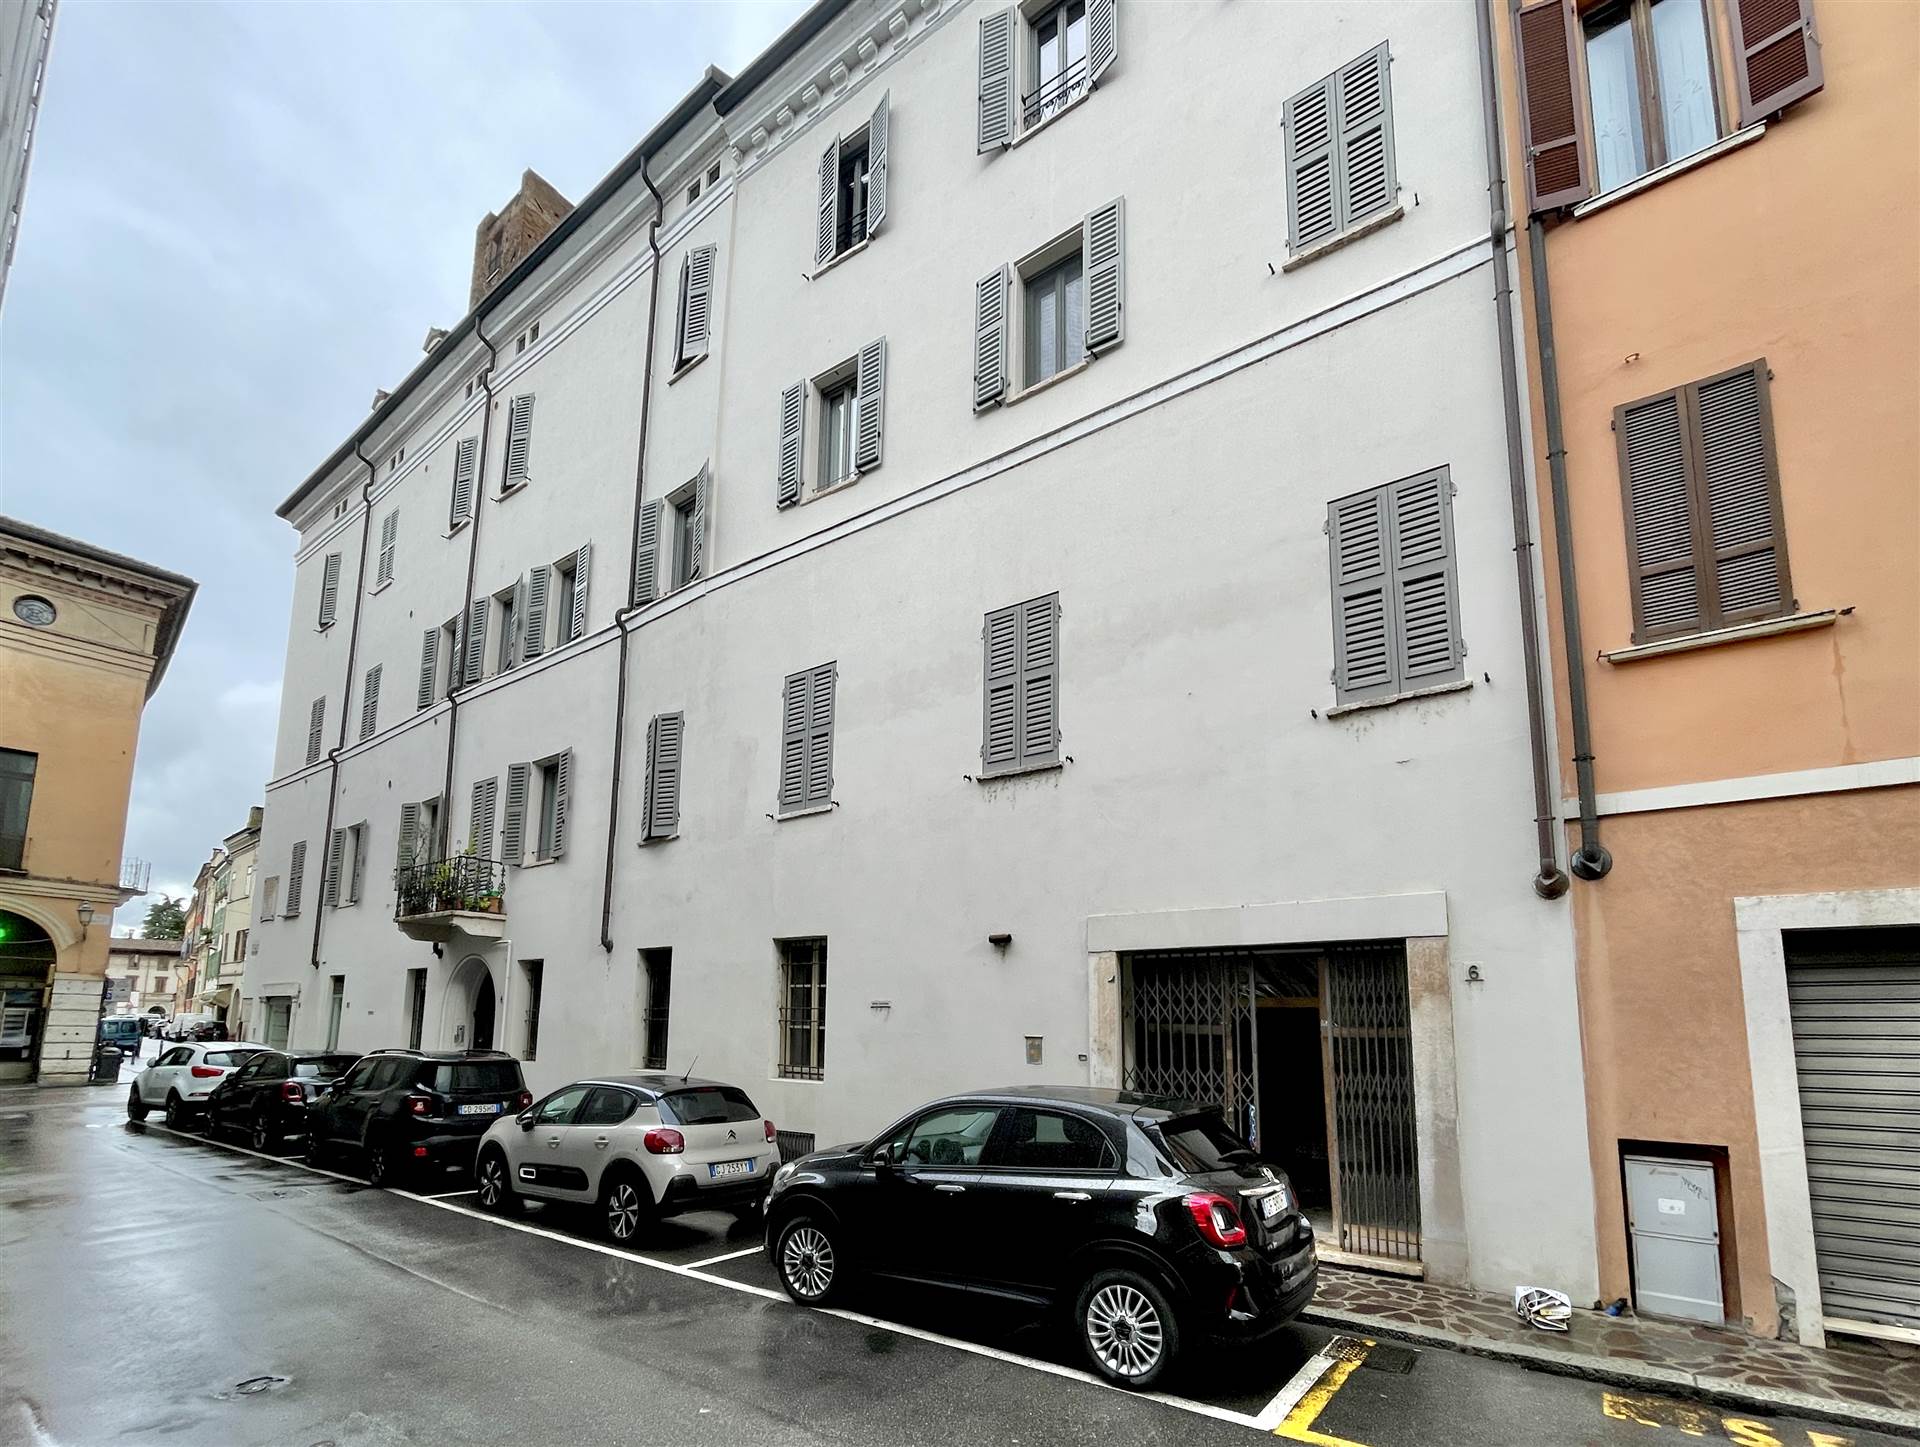 Negozio / Locale in affitto a Mantova, 4 locali, zona Zona: Centro storico, prezzo € 1.000 | CambioCasa.it